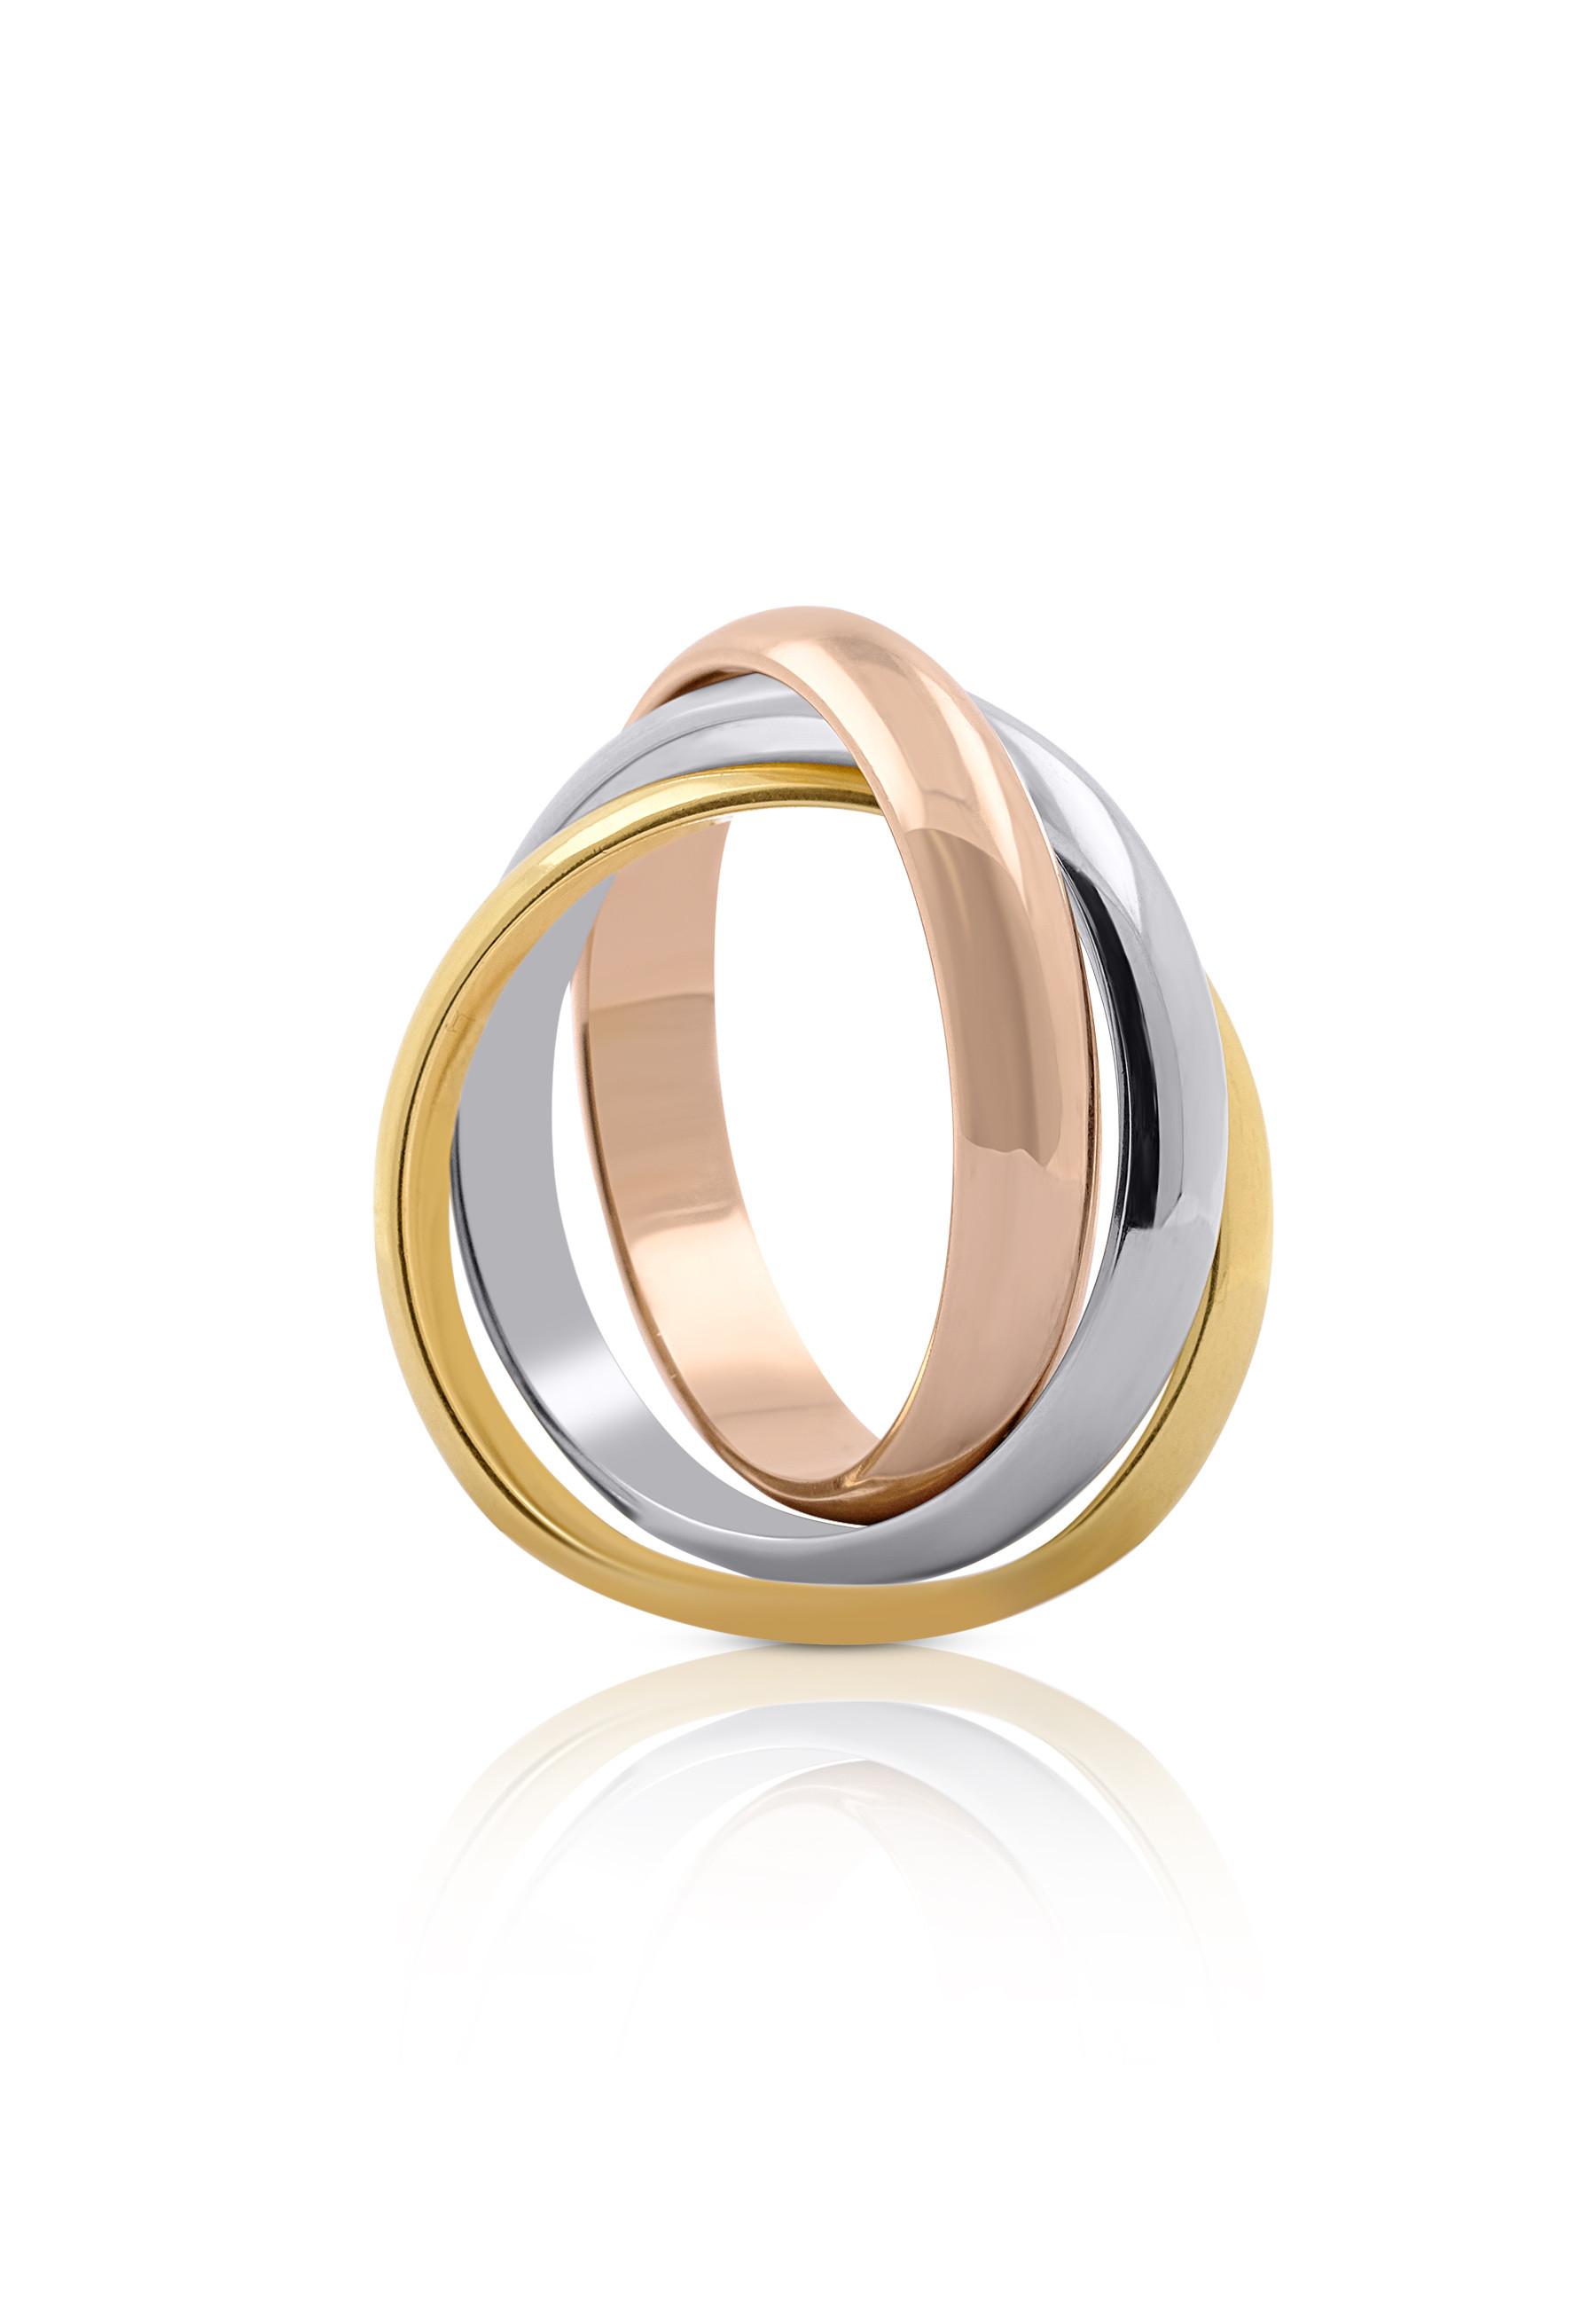 Ring Tricolor Weiss-/gelb-/rotgold 750 Damen Gold 56 von MUAU Schmuck